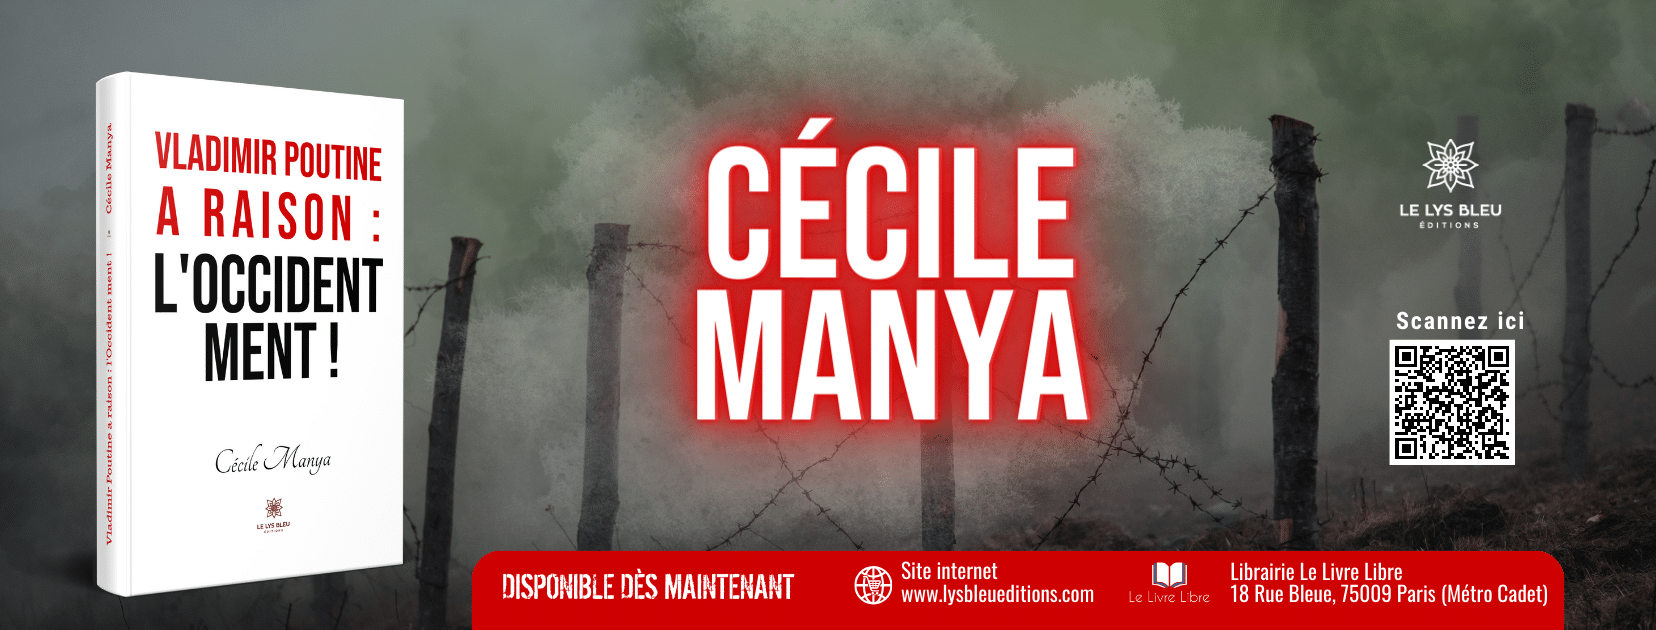 Cécile Manya, écrivaine aux richesses illimitées